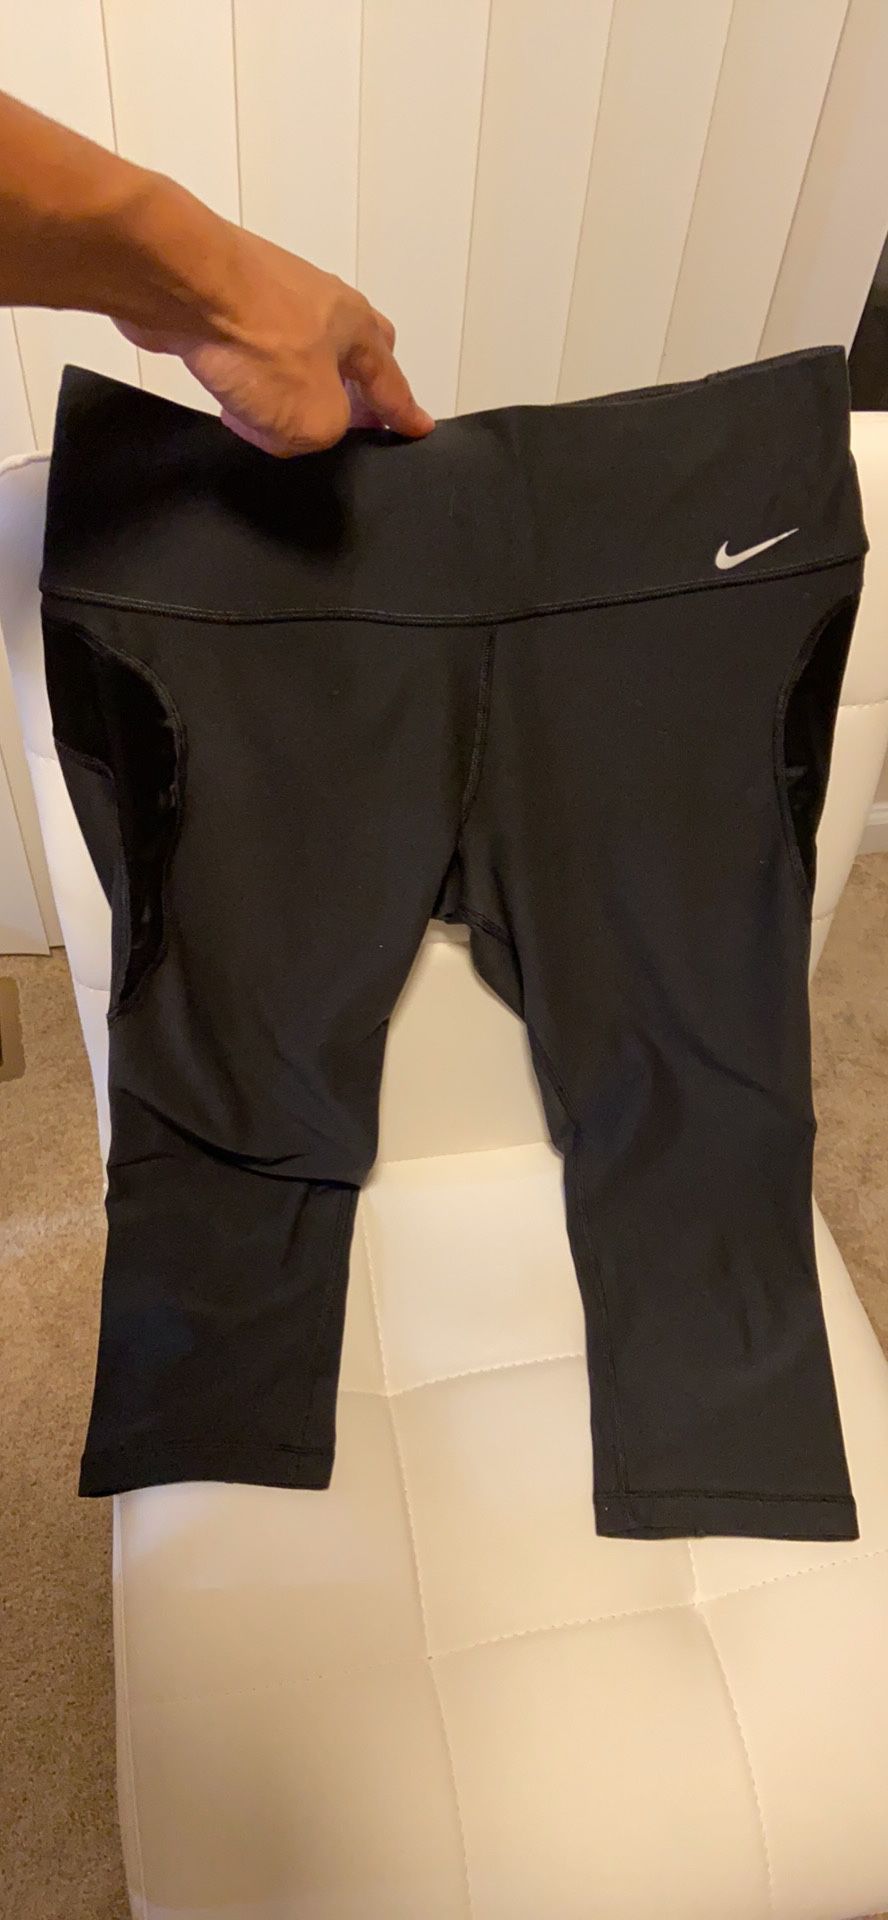 Nike dri fit Capri pants size small